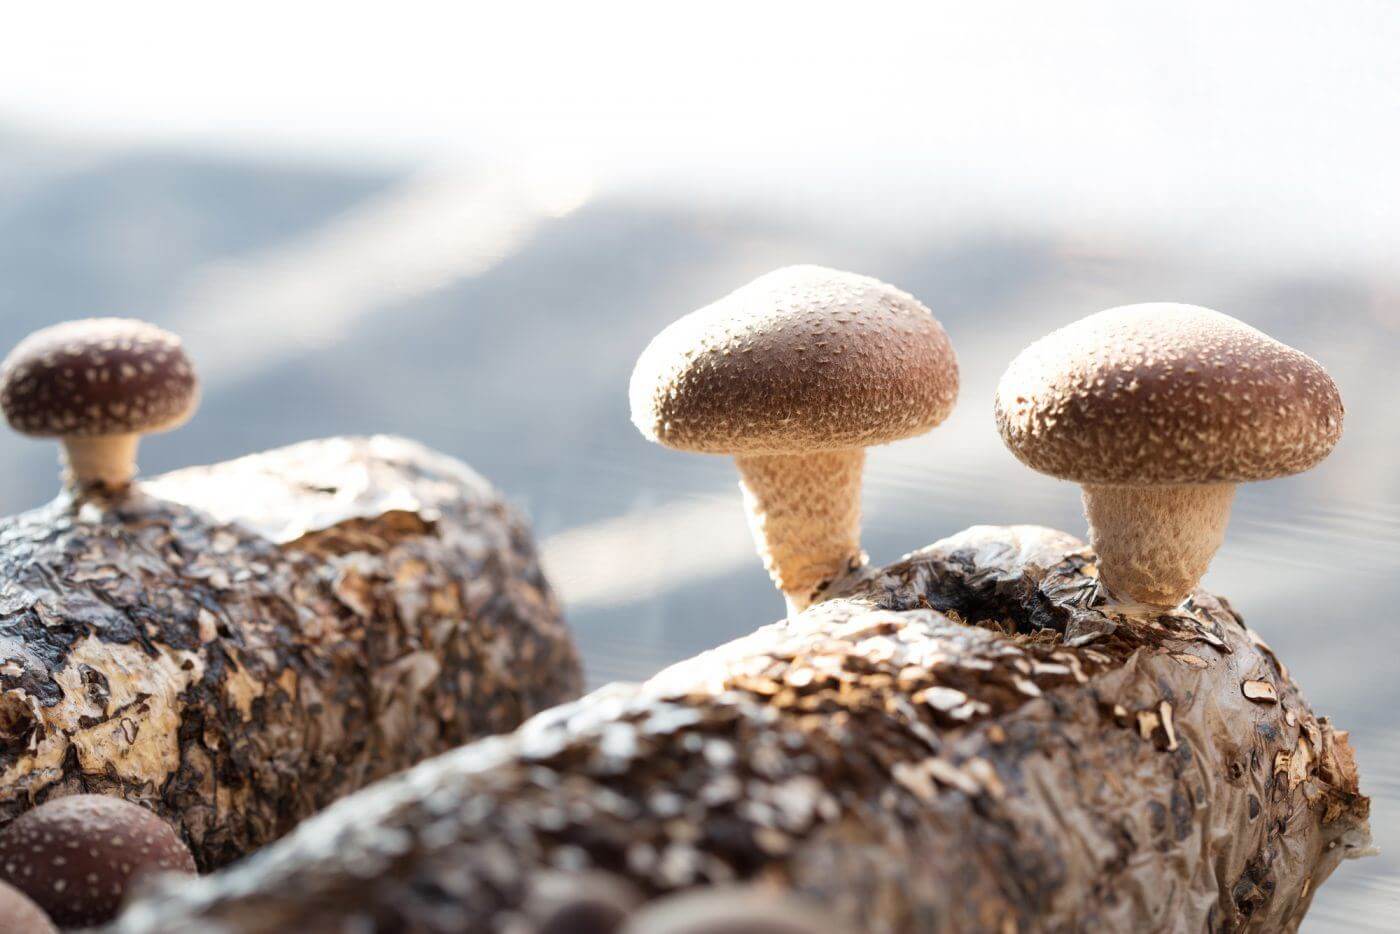 home mushroom growing download free